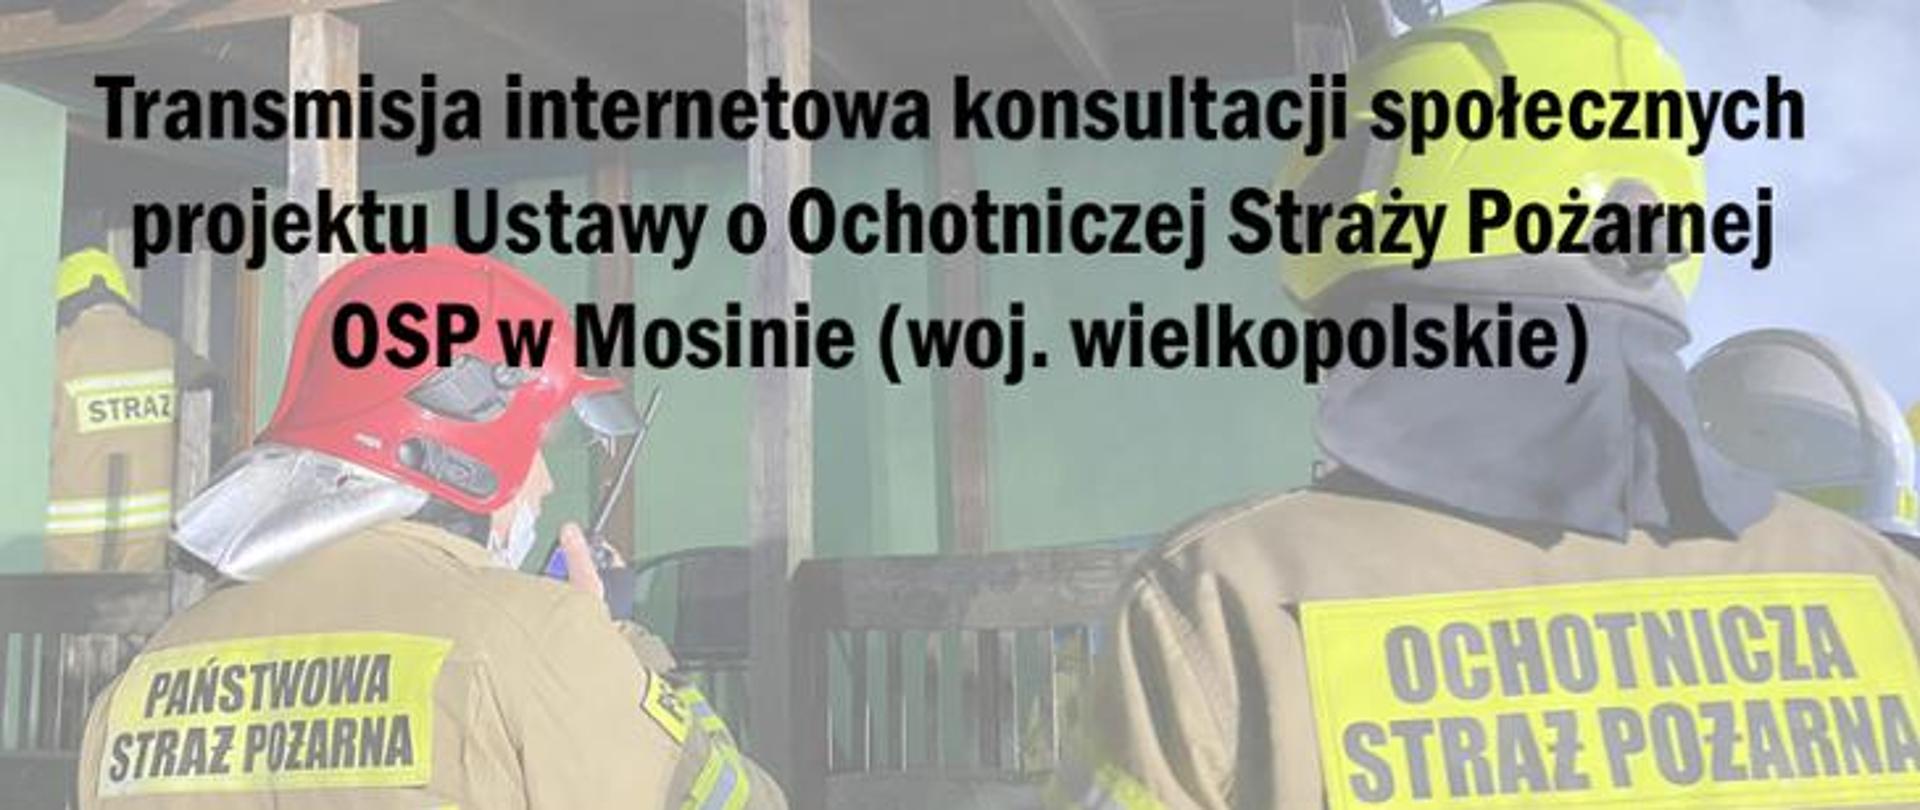 Transmisja internetowa konsultacji społecznych projektu Ustawy o Ochotniczej Straży Pożarnej OSP w Mosinie (woj. wielkopolskie)